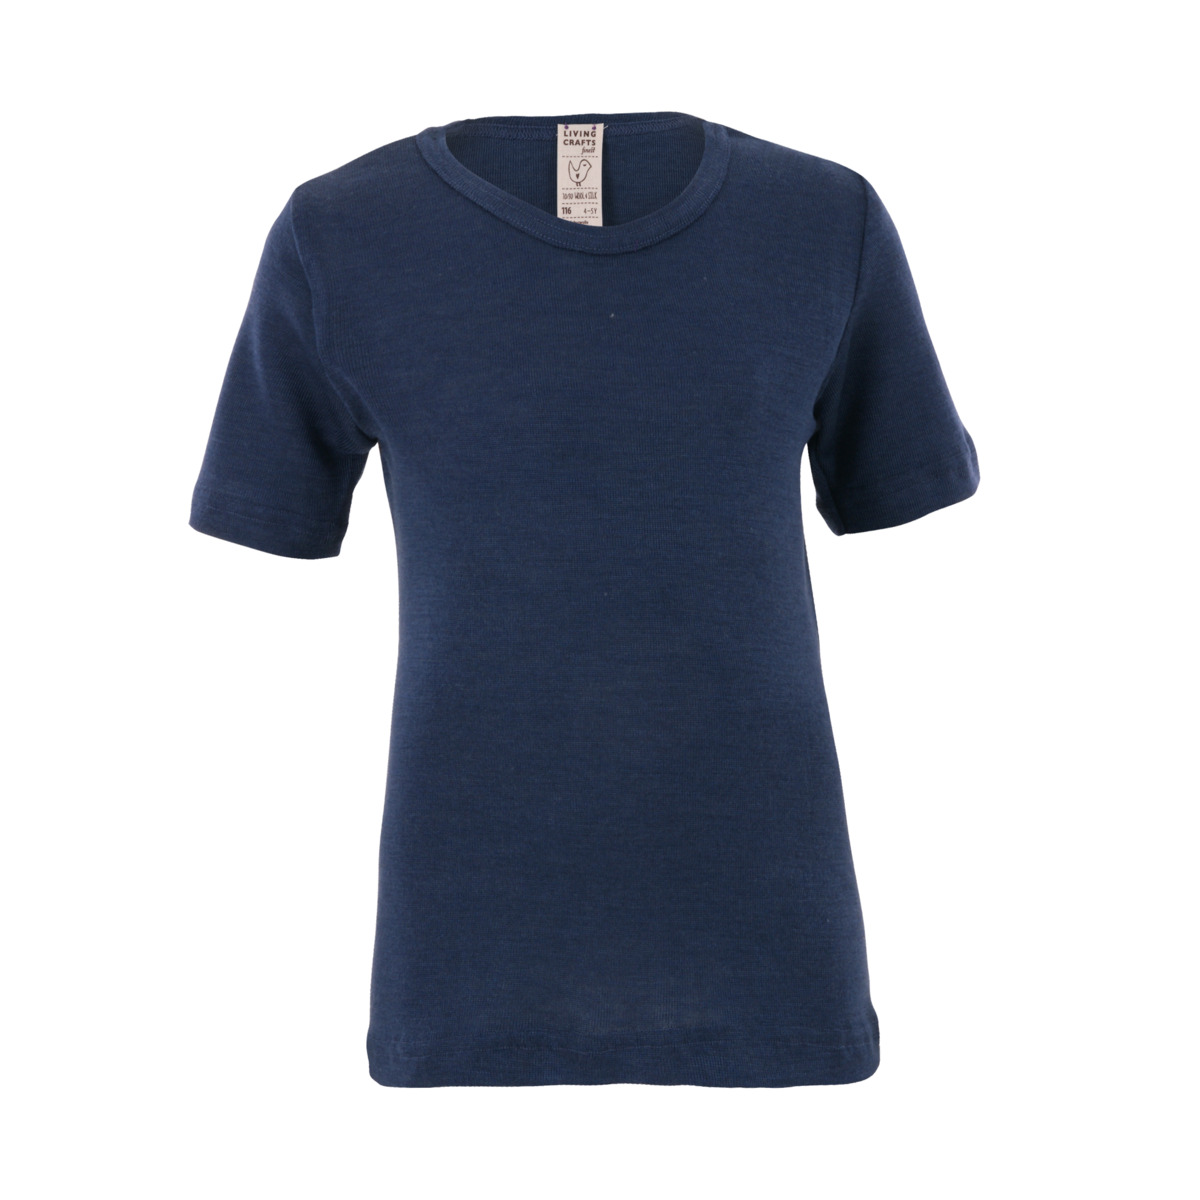 Blue Short-sleeved shirt, 